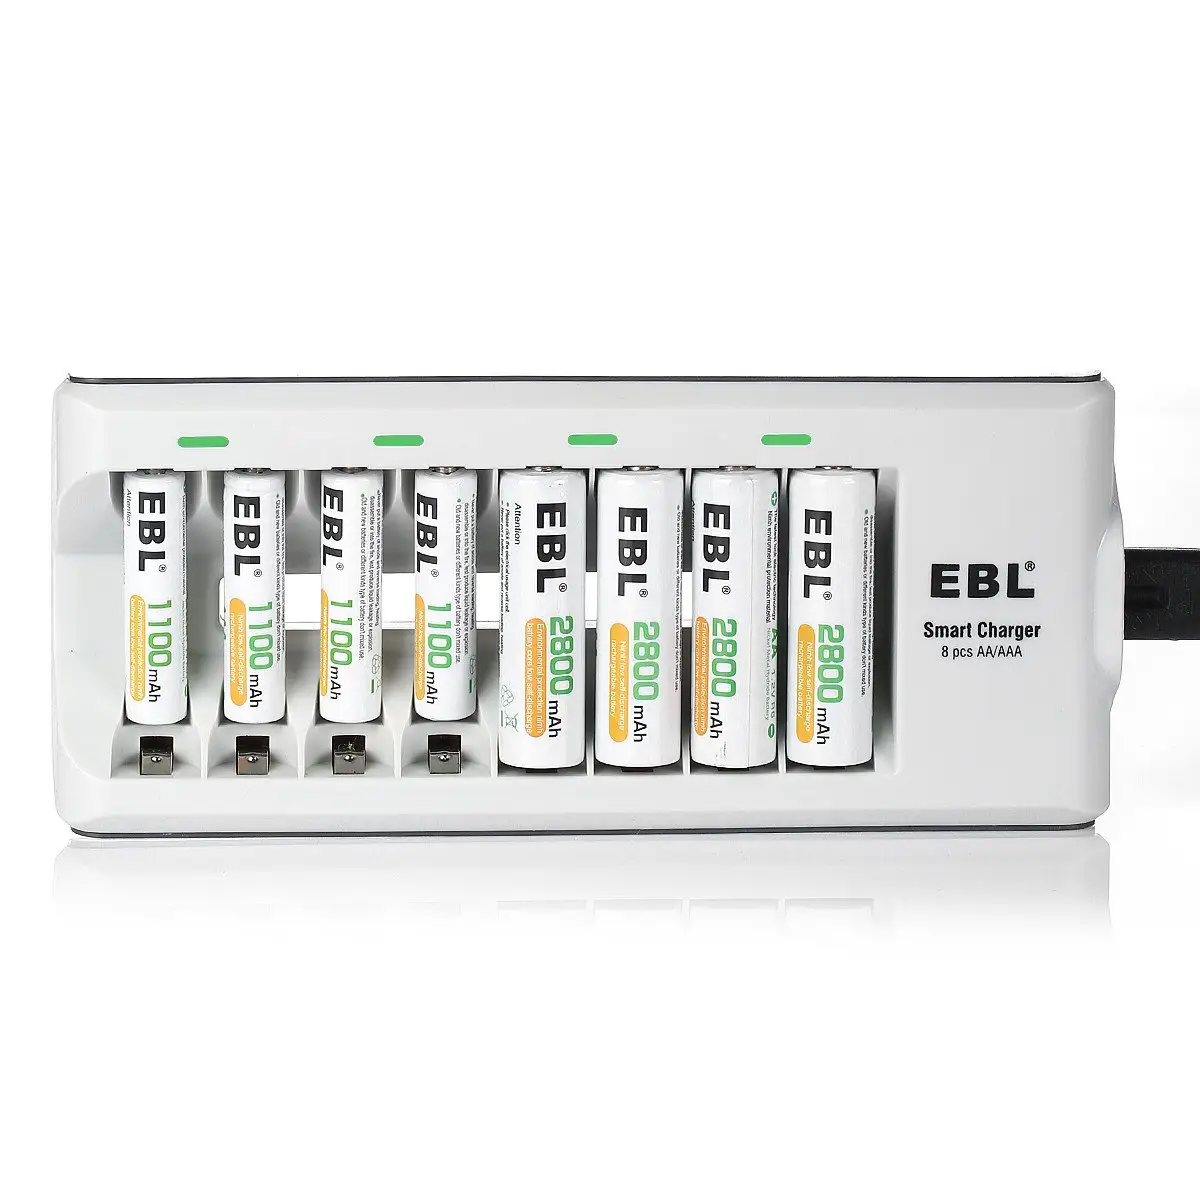 Ebl carregador de bateria recarregável 8bay, pilhas aaa 2800mah de longa duração